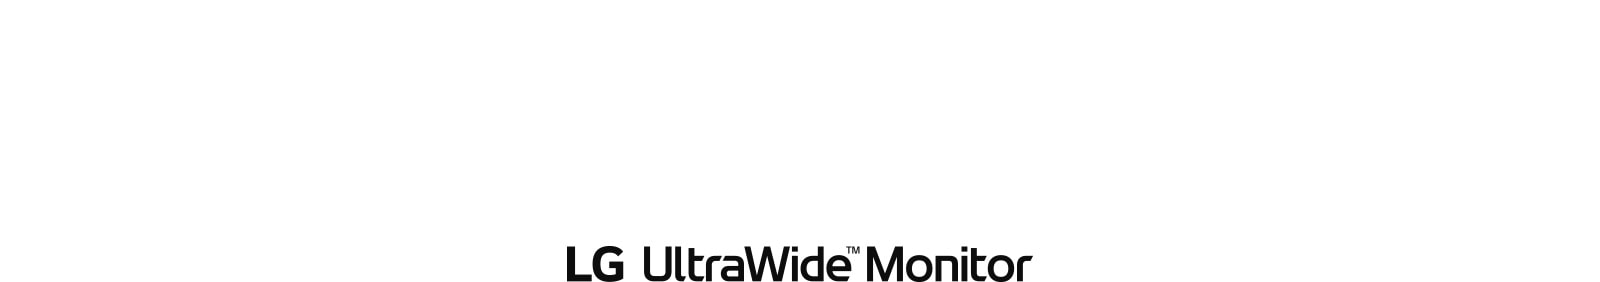 MNT-UltraWide-09-1-Line-Up-D